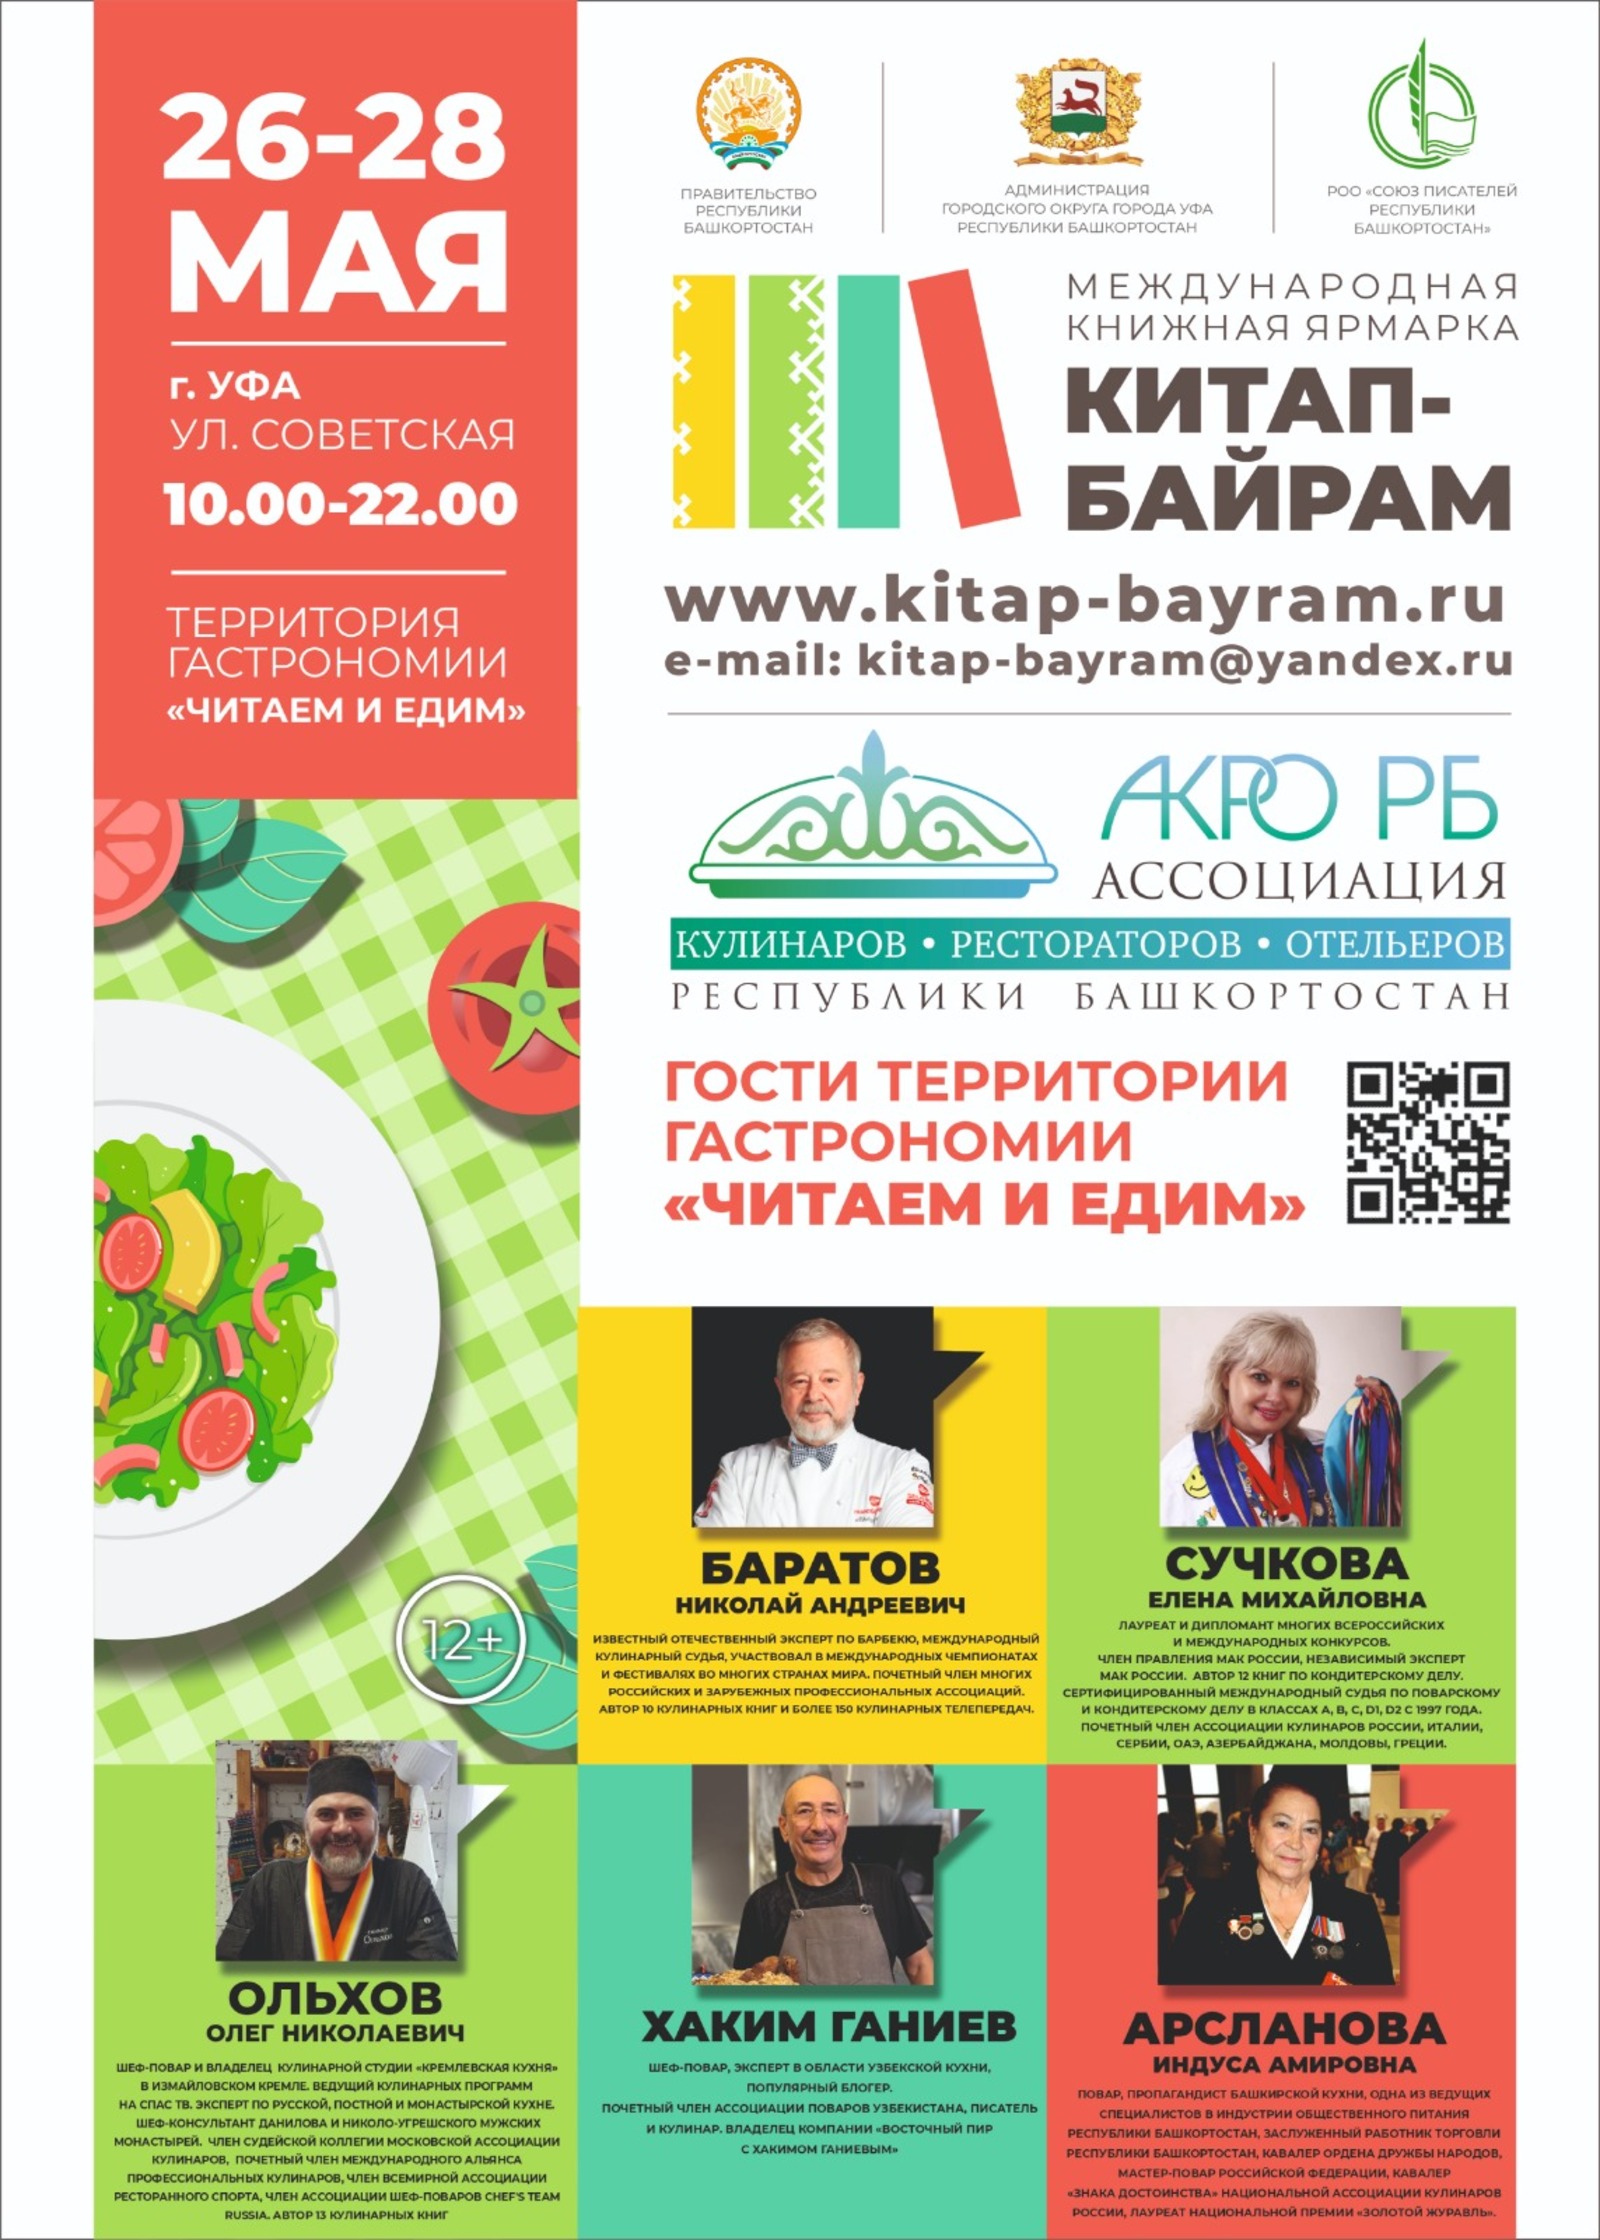 С 26 по 28 мая в Уфе впервые состоится Международная книжная ярмарка «Китап-байрам»